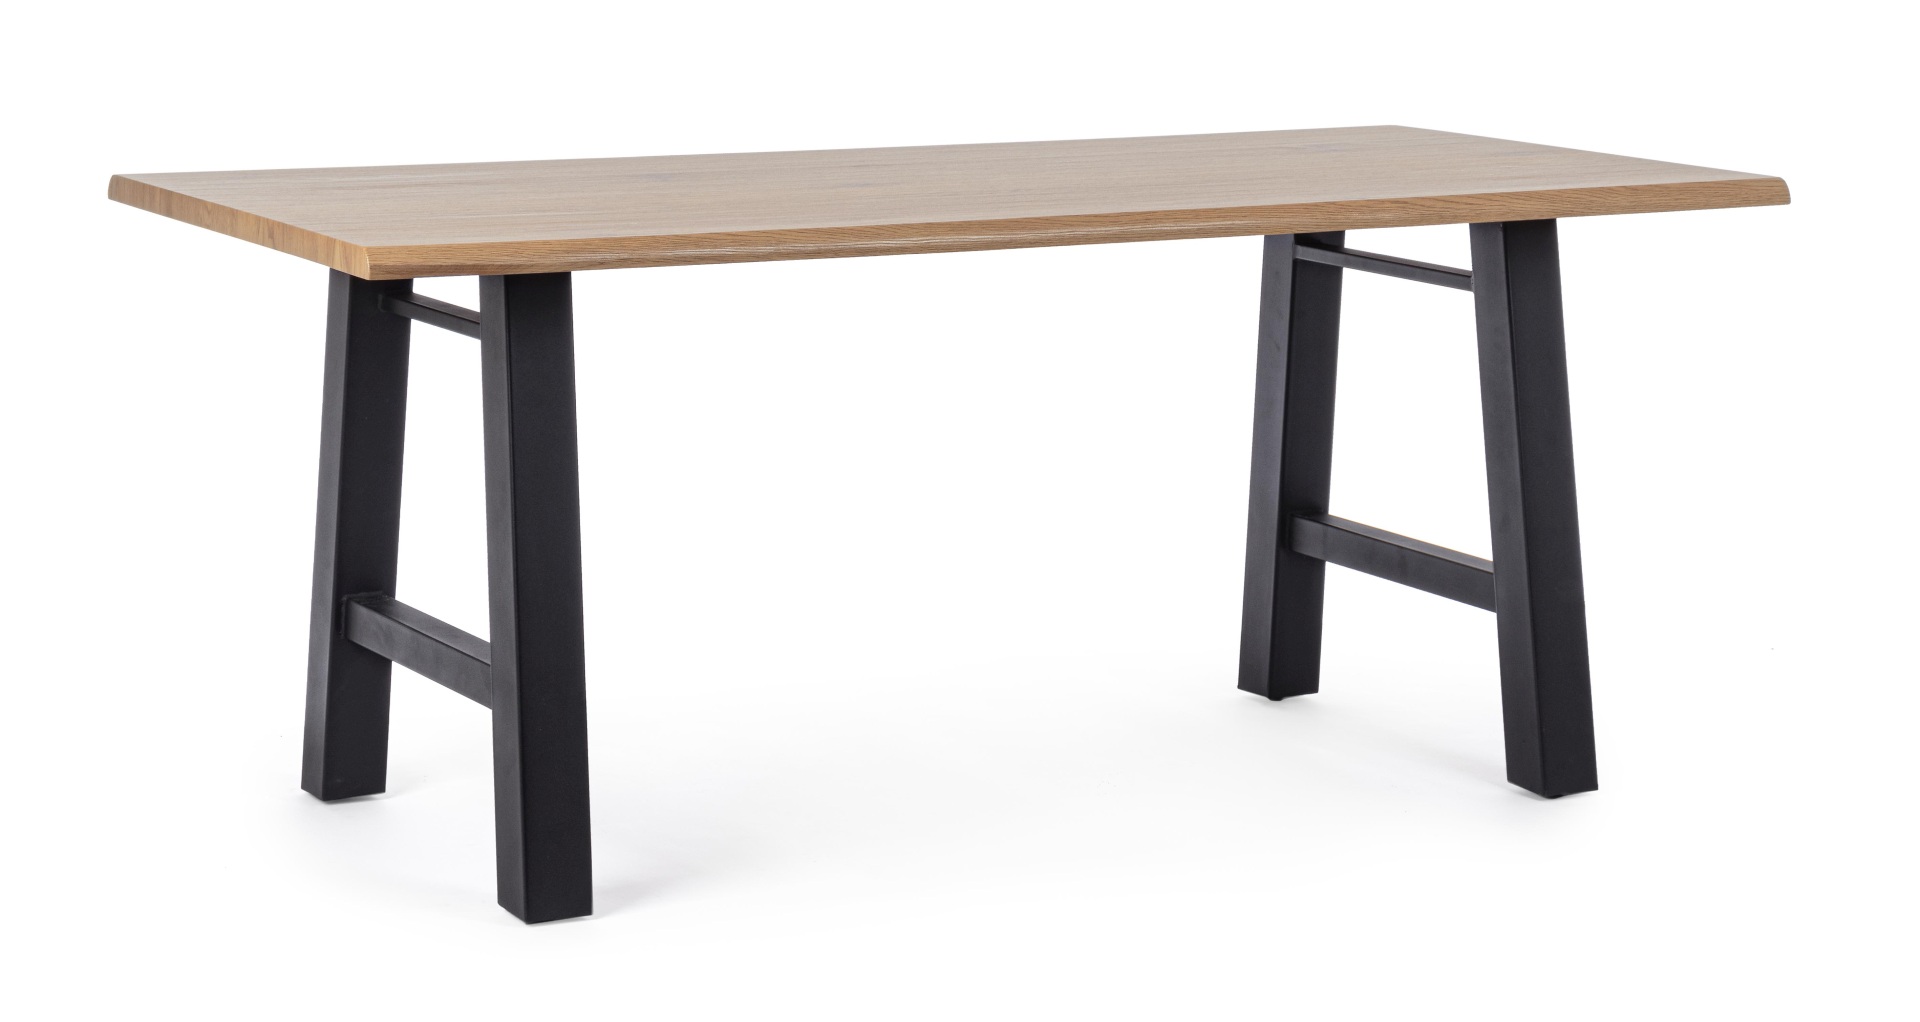 Der Esstisch Fred überzeugt mit seinem klassischem Design. Gefertigt wurde er aus MDF, welches eine Holz-Optik besitzt. Das Gestell des Tisches ist aus Metall und besitzt eine schwarze Farbe. Der Tisch hat eine Breite von 180 cm.